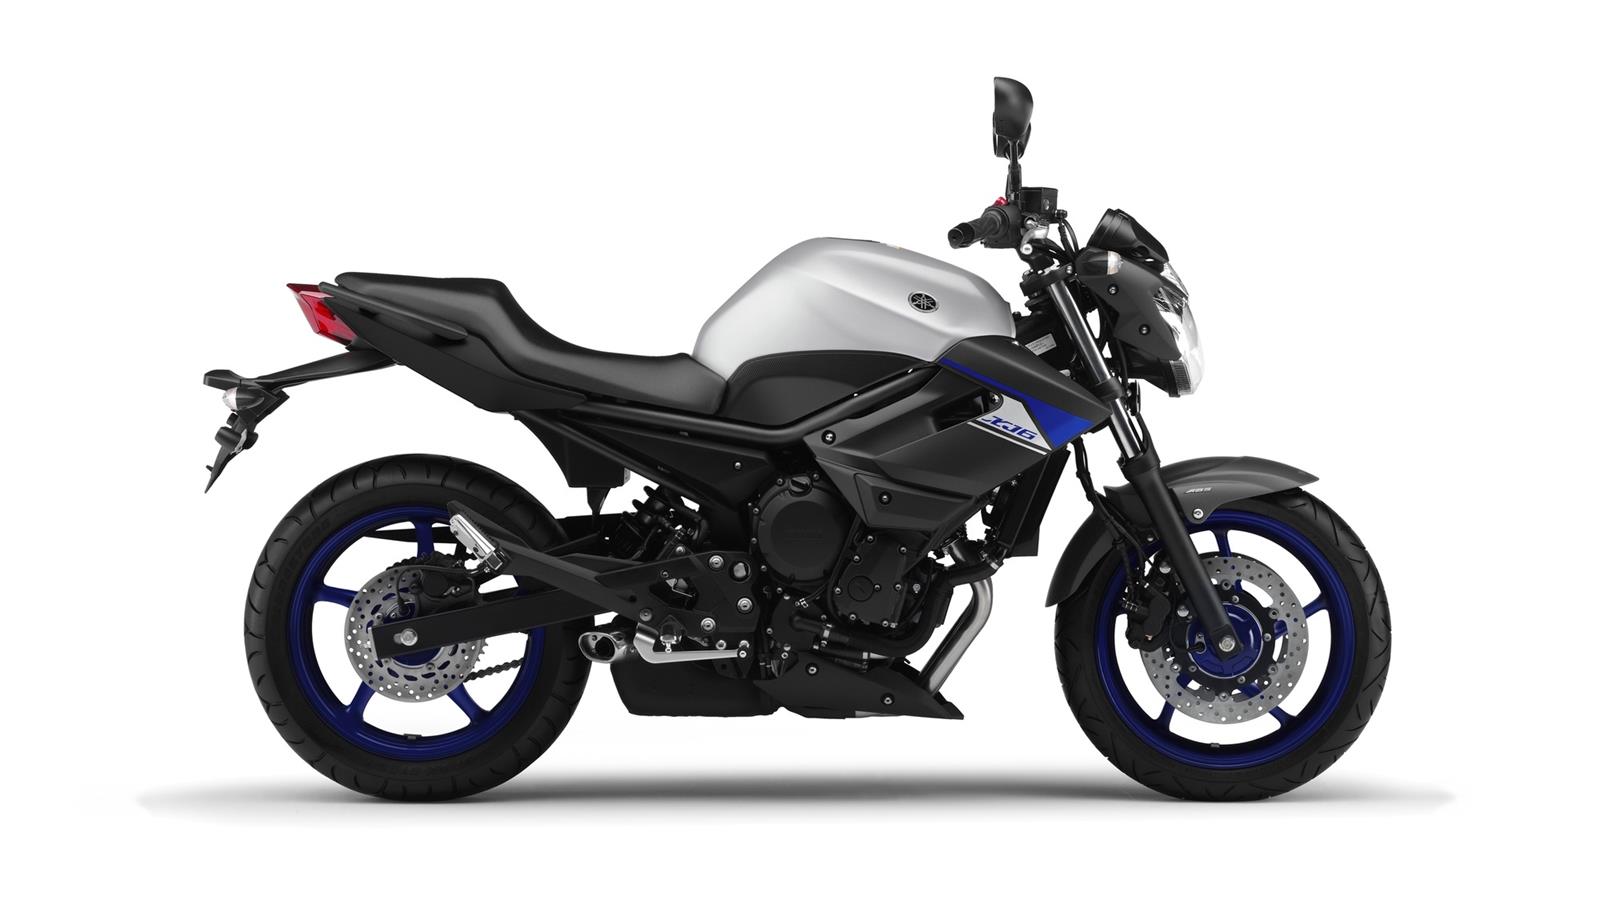 Yamaha XJ6 Ryzí zážitek z jízdy! Kategorie do 600 ccm patří mezi nejoblíbenější třídy motocyklů. Podívejte se na model XJ6 a zjistíte proč!